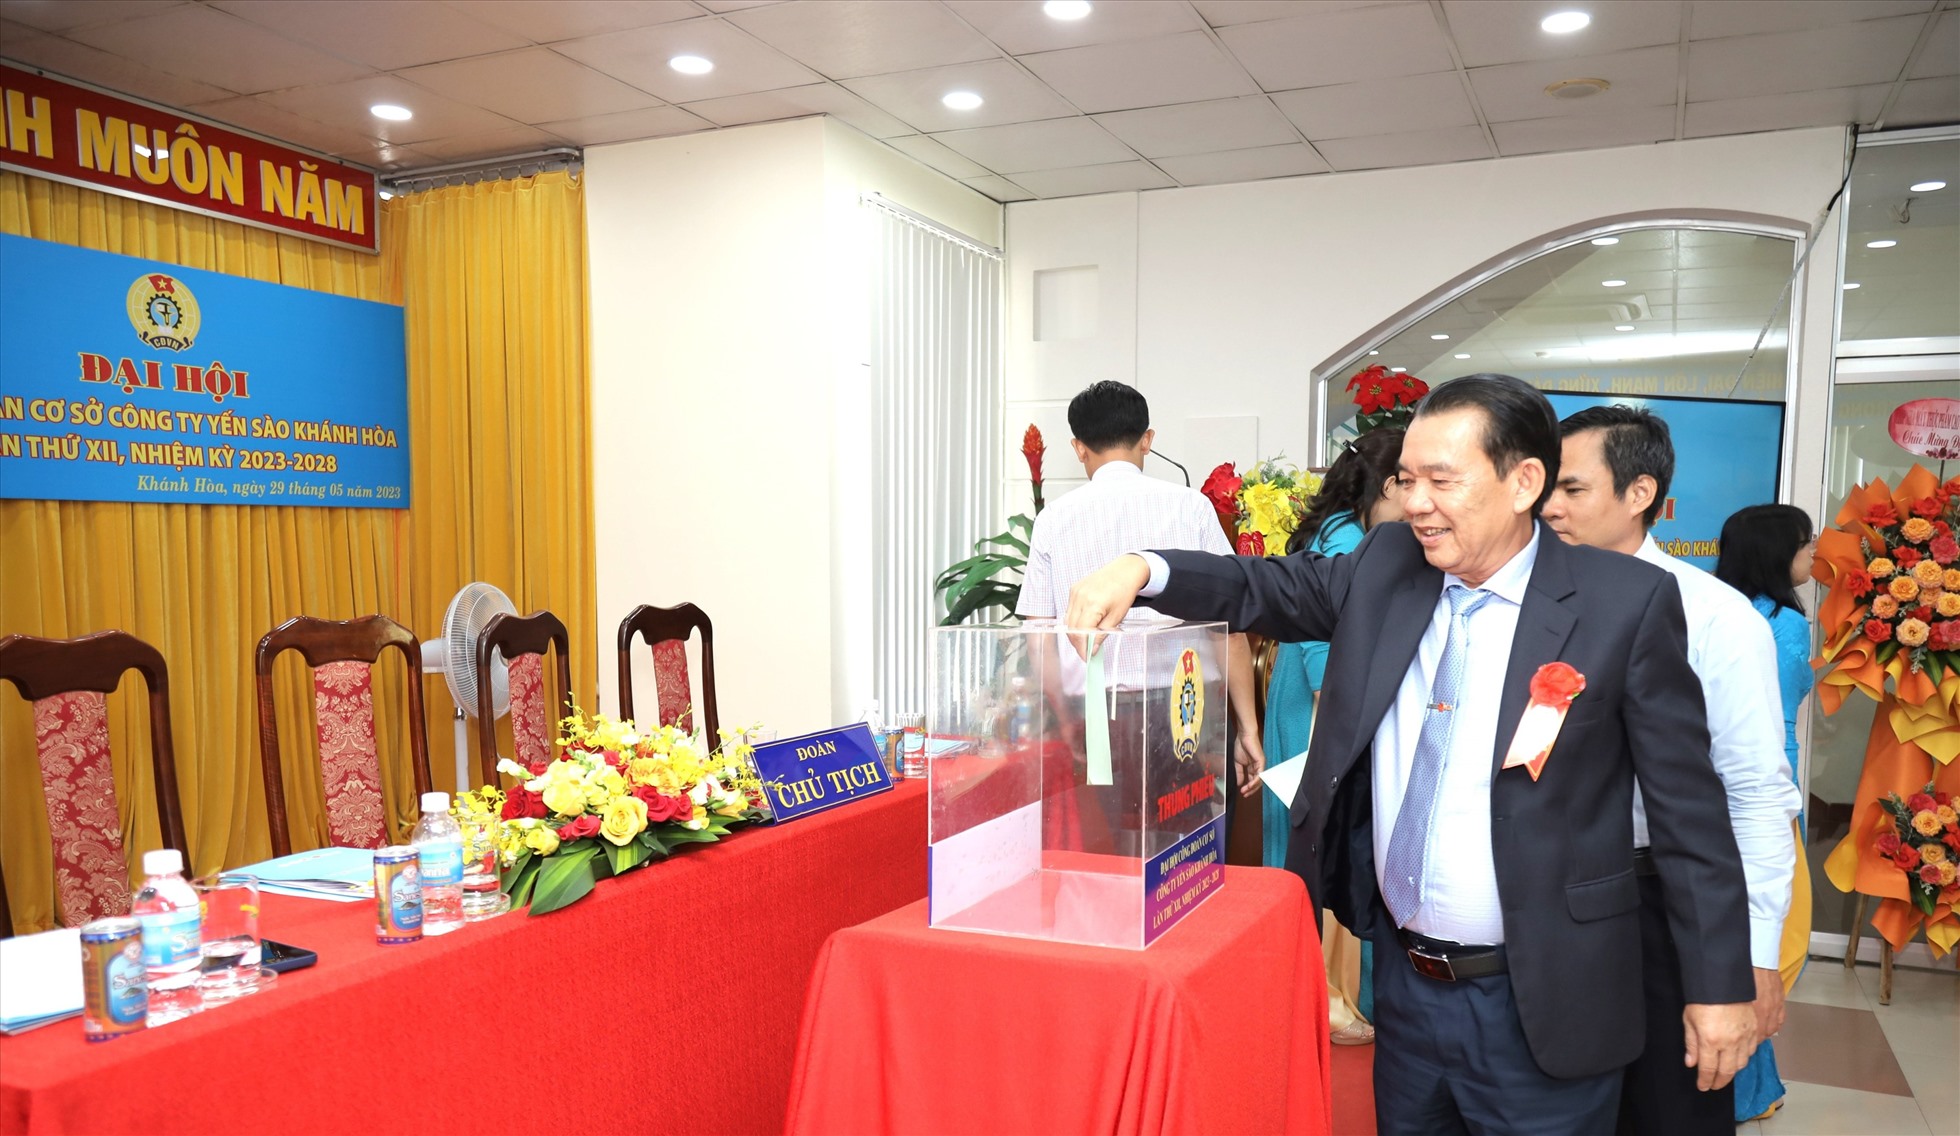 Các đại biểu bỏ phiếu bầu Ban chấp hành CĐCS Công ty Yến Sào Khánh Hòa nhiệm kì 2023-2028. Ảnh: Nguyễn Thủy